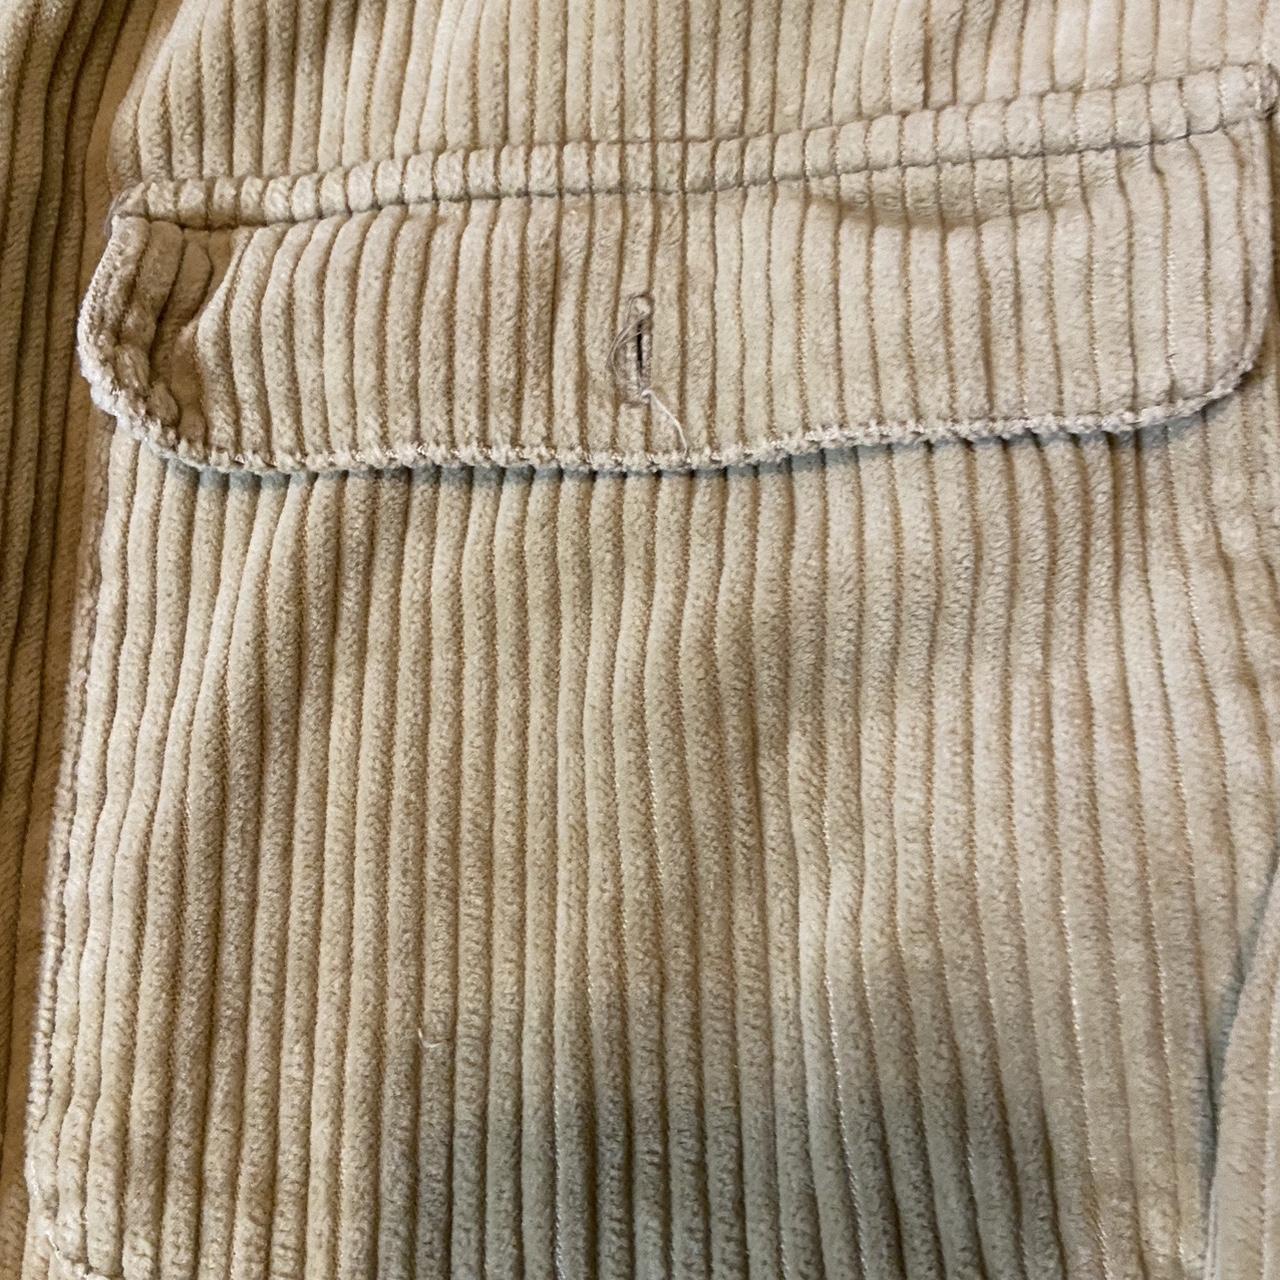 Men’s vintage coil zip up jacket sizing in Large... - Depop